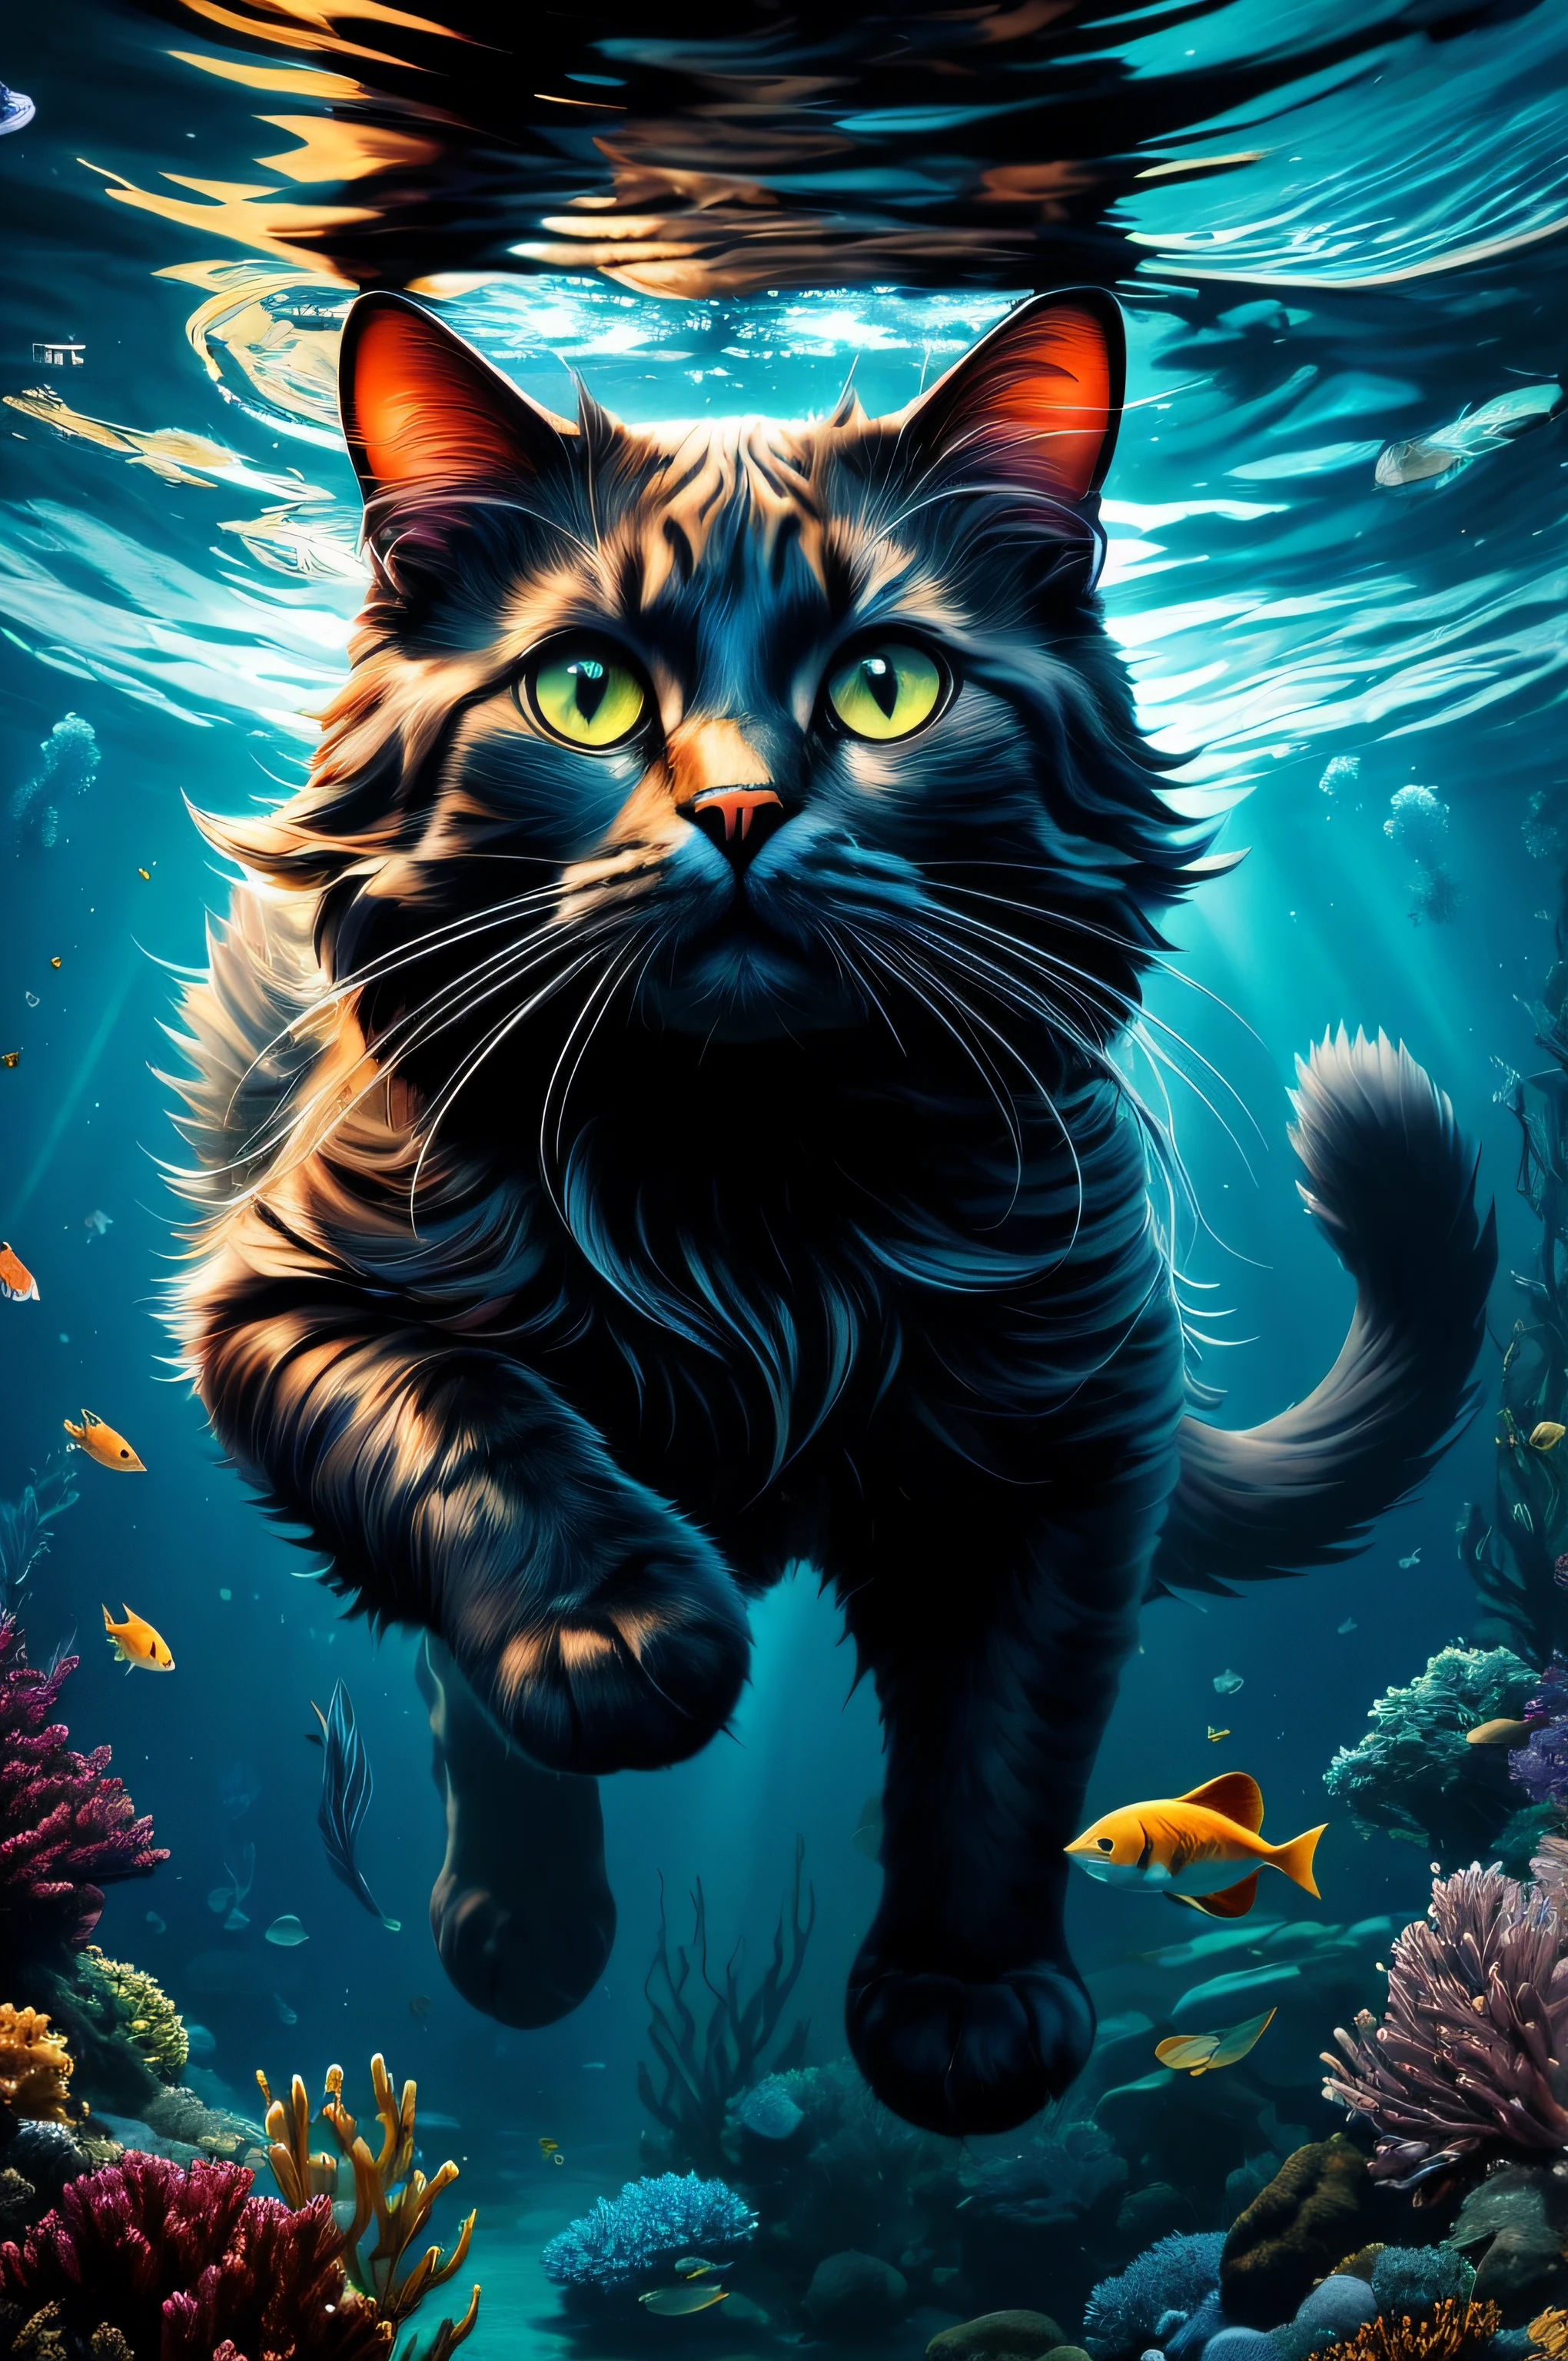 물속에 물고기가 있는 고양이 그림, 멋진 고양이, 고양이. 디지털 페인트, 매우 상세한 4K 디지털 아트, 종이 멋진 벽지, 액체 고양이, 4K 벽지, 4K 벽지, 4K HD 벽지가 매우 상세함, 상세한 4K 디지털 아트, 고양이가 물 속에서 수영하다, 고양이 해마 변신술, 아름다운 디지털 아트, 고품질 벽지